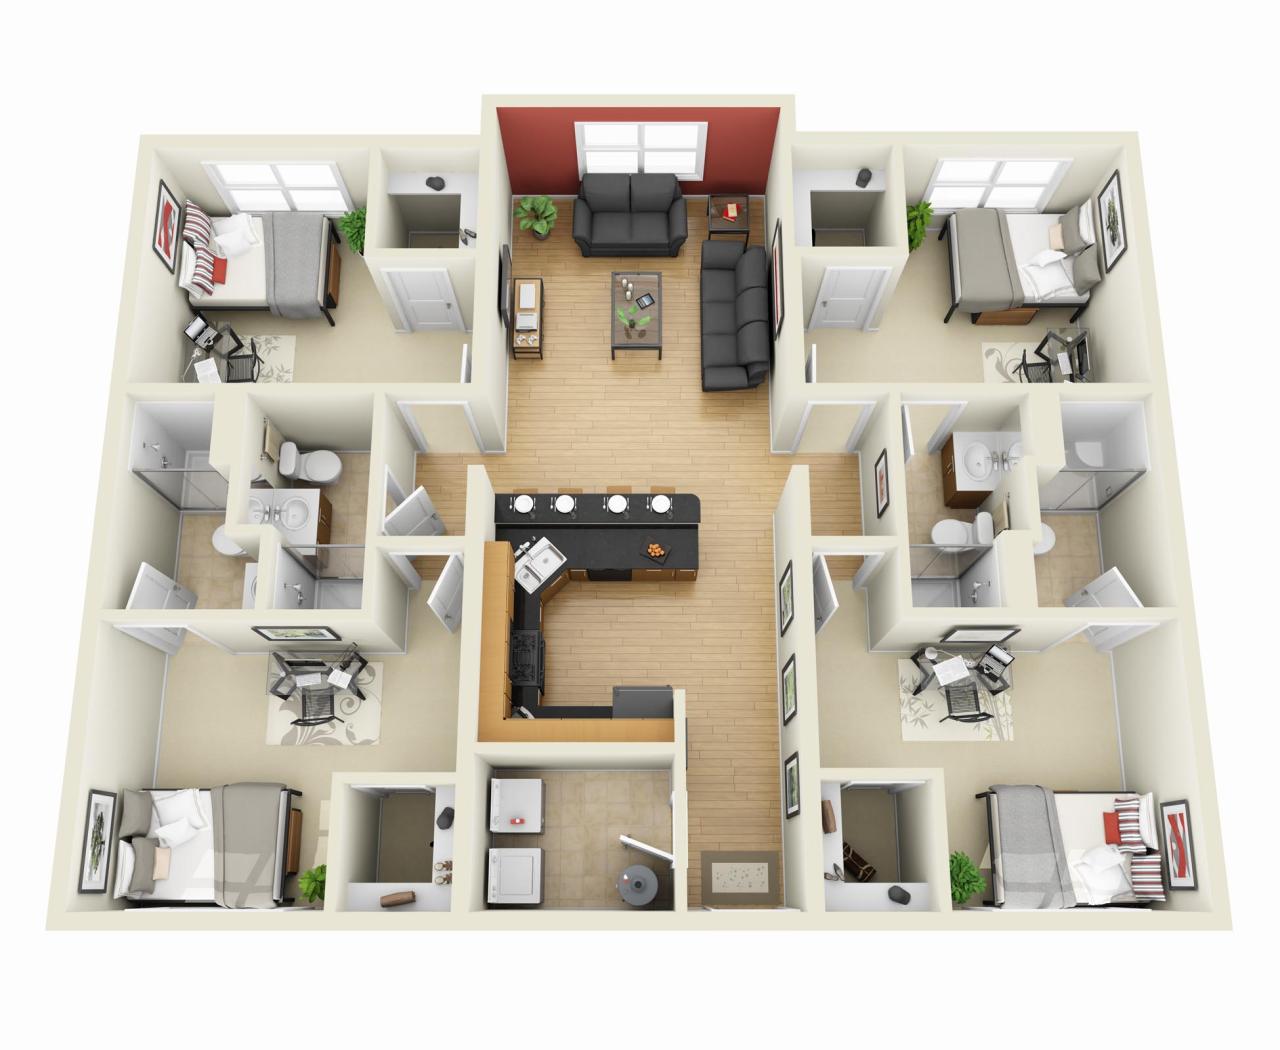 50 Four “4” Bedroom Apartment/House Plans Architecture & Design